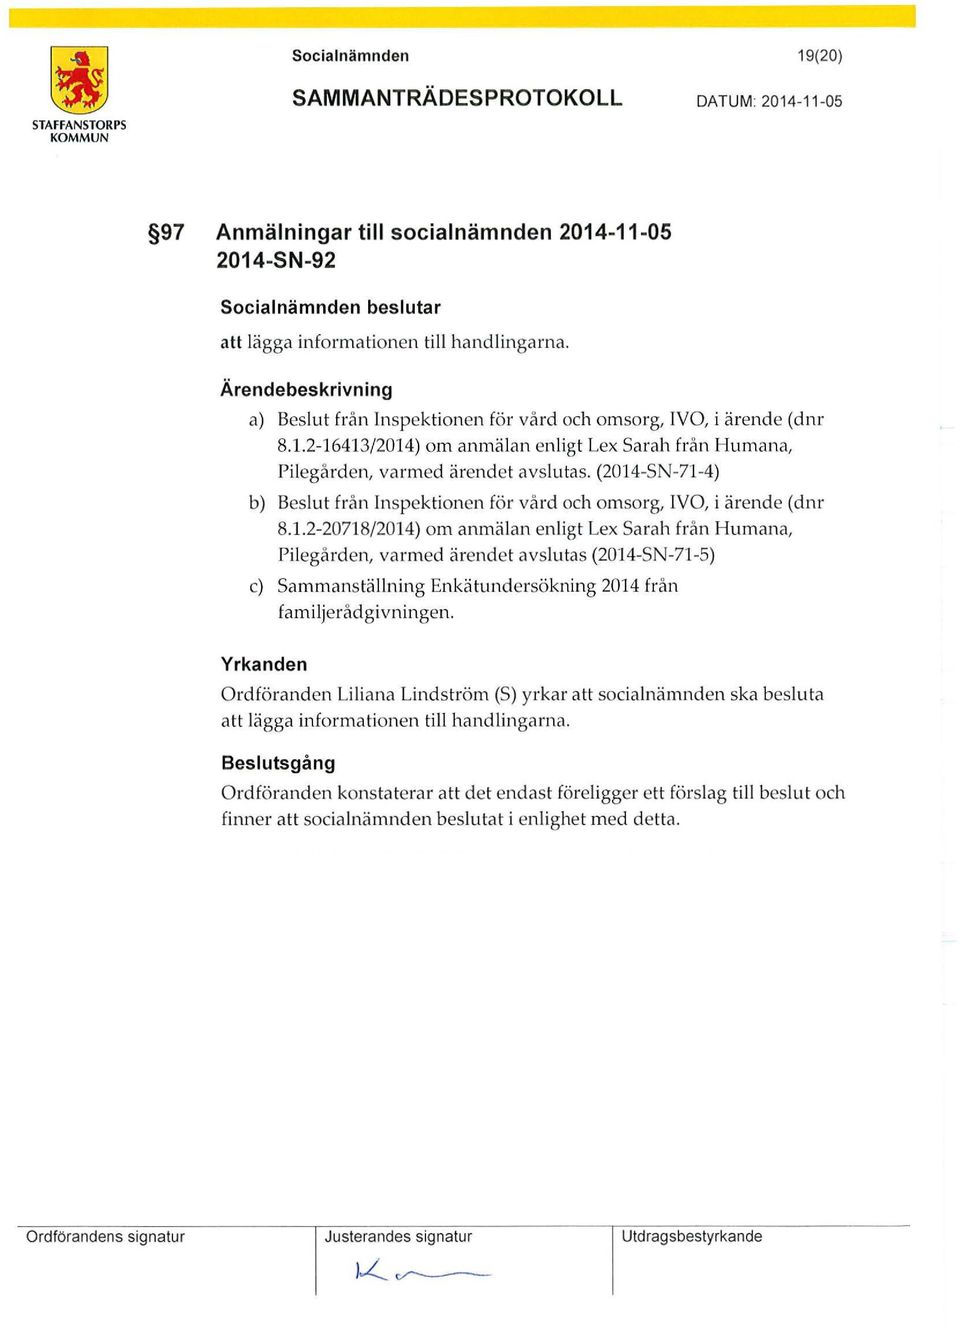 (2014-SN-71-4) b) Beslut från Inspektionen för vård och omsorg, IVO, i ärende (dnr 8.1.2-20718/2014) om anmälan enligt Lex Sarah från Humana, Pilegården, varmed ärendet avslutas (2014-SN-71-5) c) Sammanstä llning Enkätundersökning 2014 från familjerådgivningen.